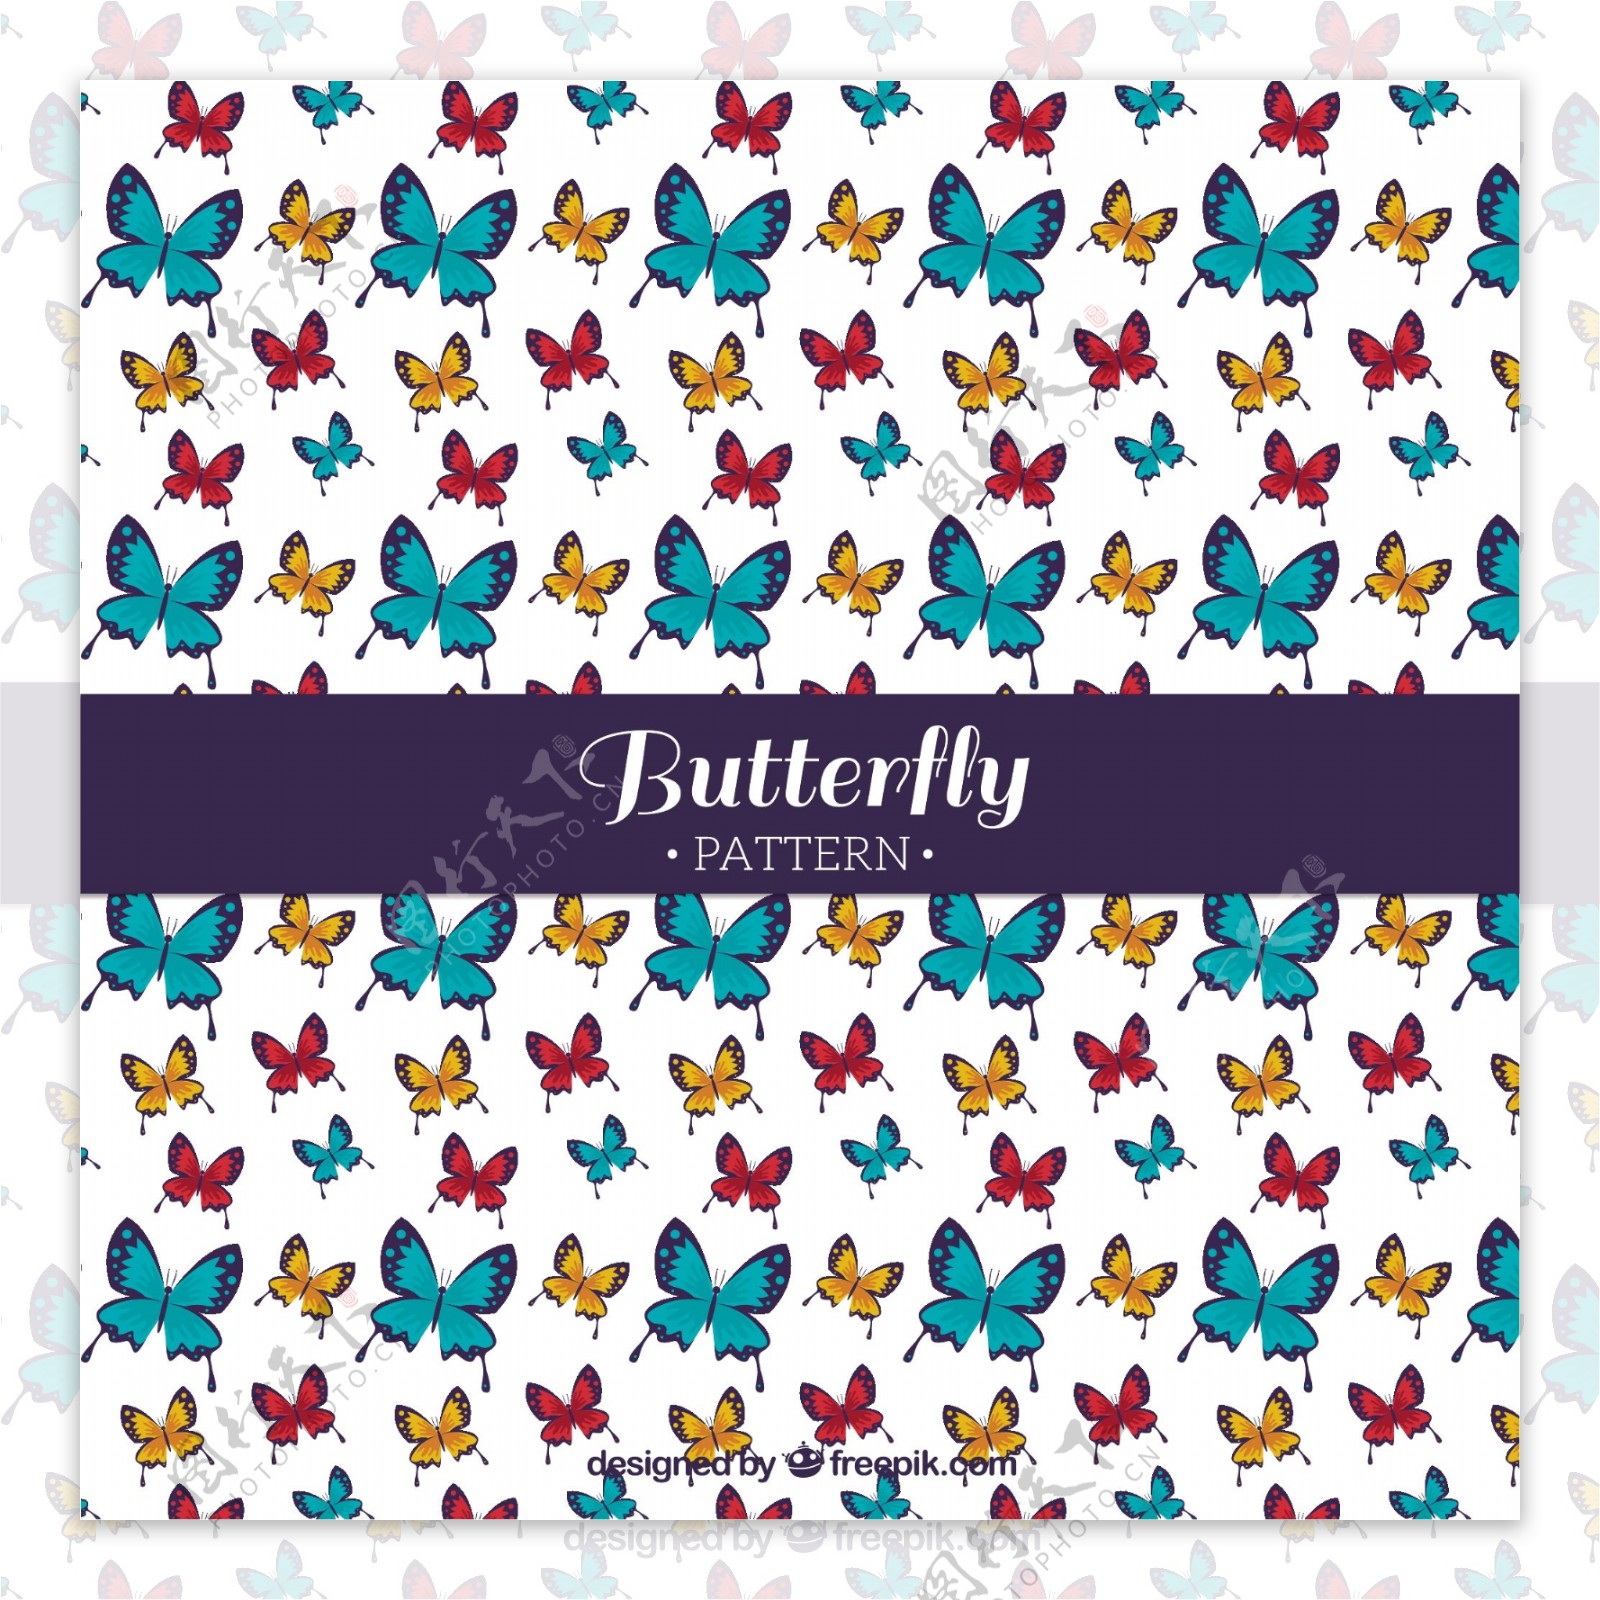 平面设计中彩色蝴蝶的美丽图案